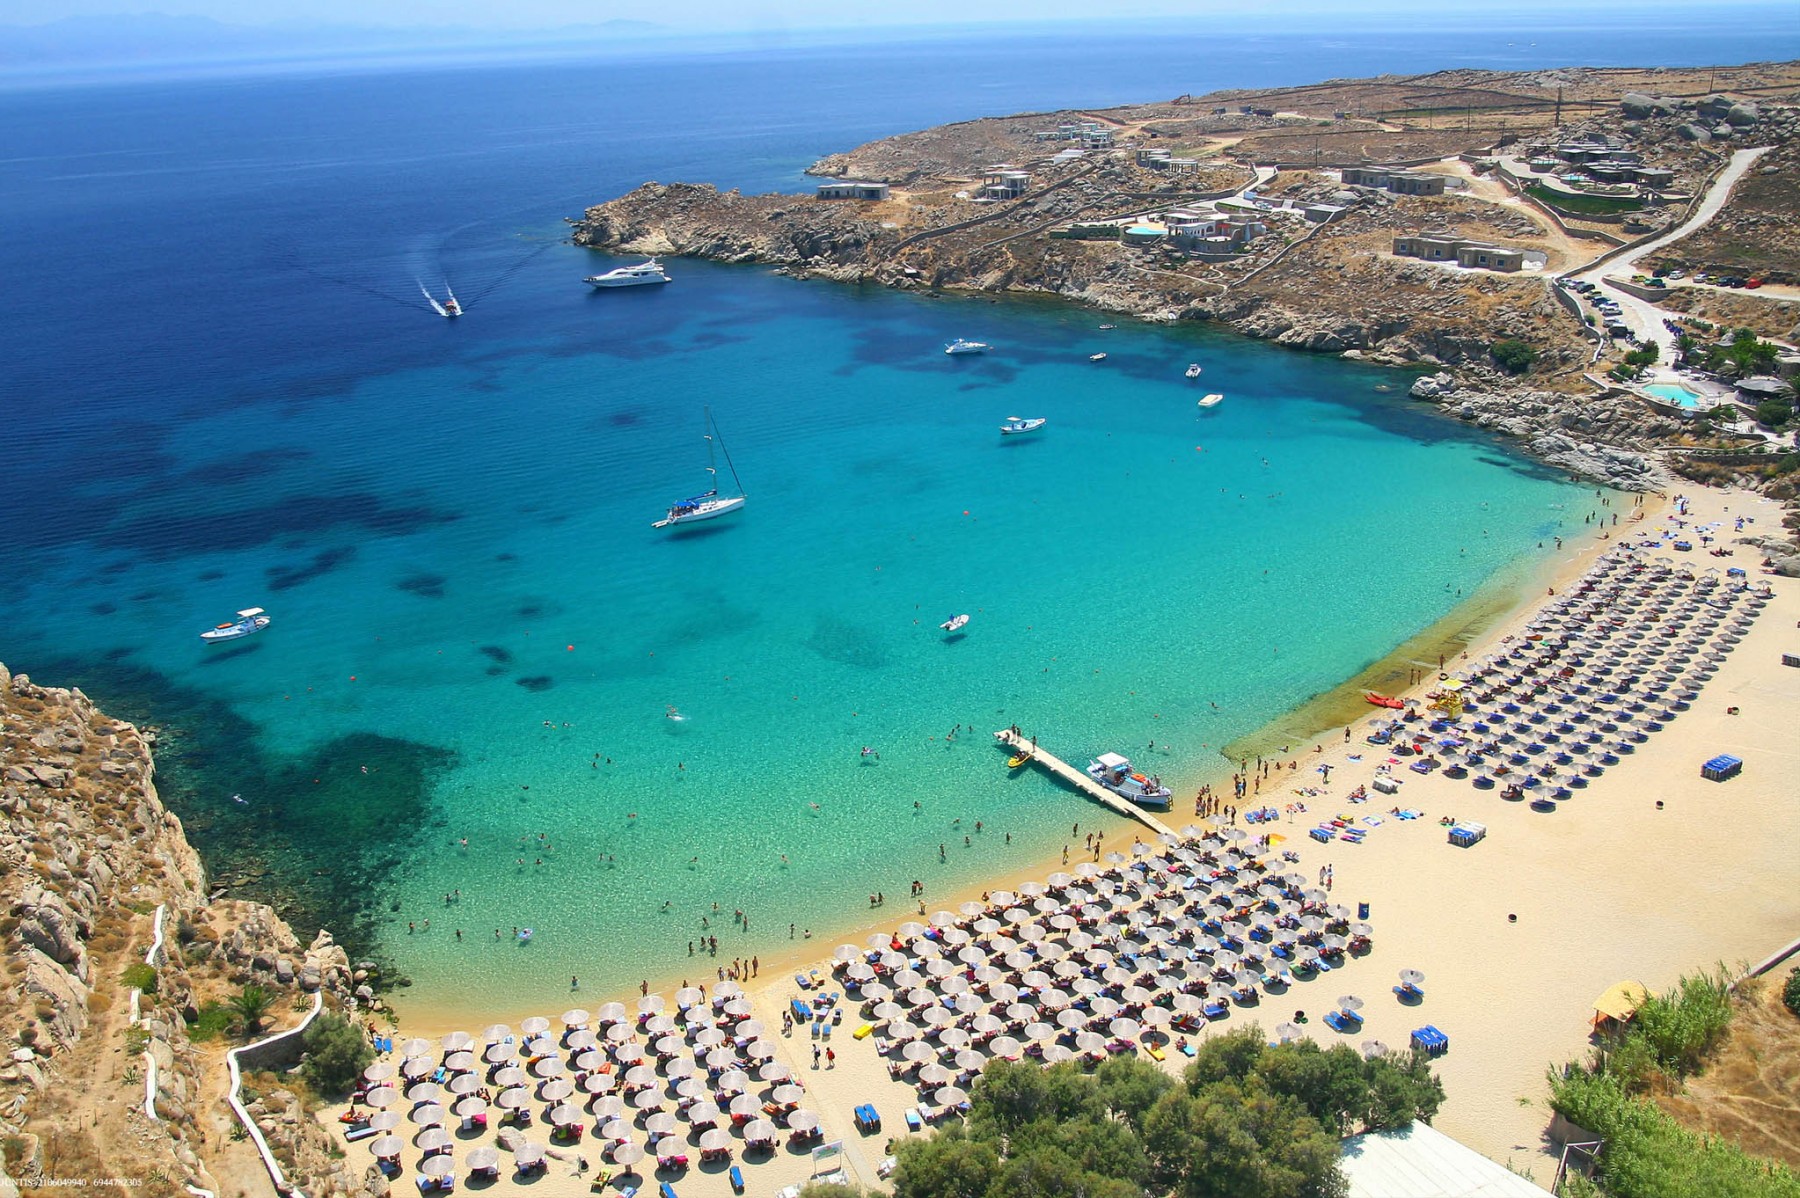 Las 10 Mejores Playas de Grecia: Seychelles, Santorini, Mykonos...